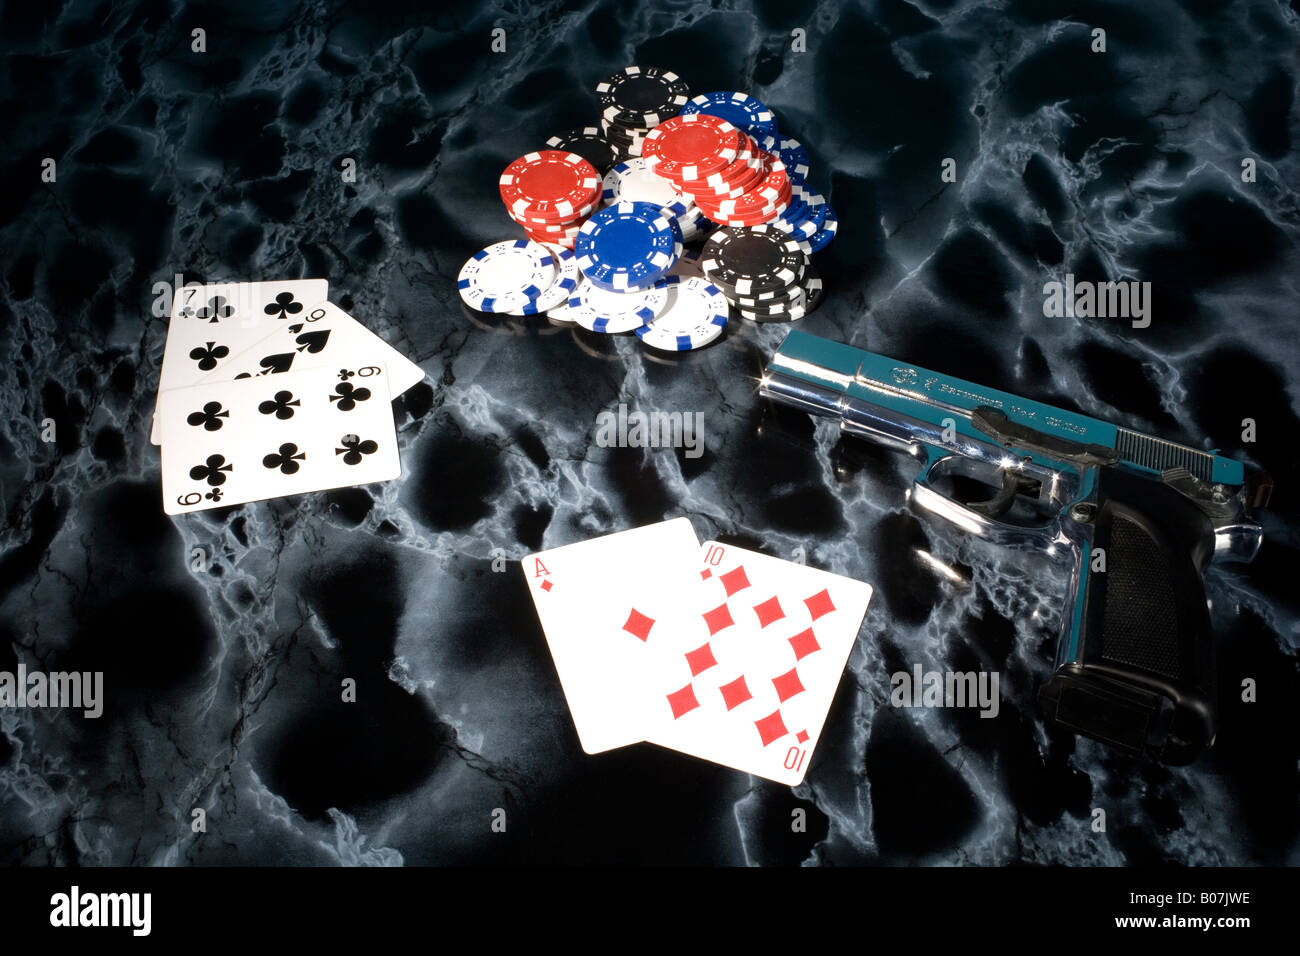 Black Jack jeu de cartes Kartenspiel Siebzehnundvier Banque D'Images